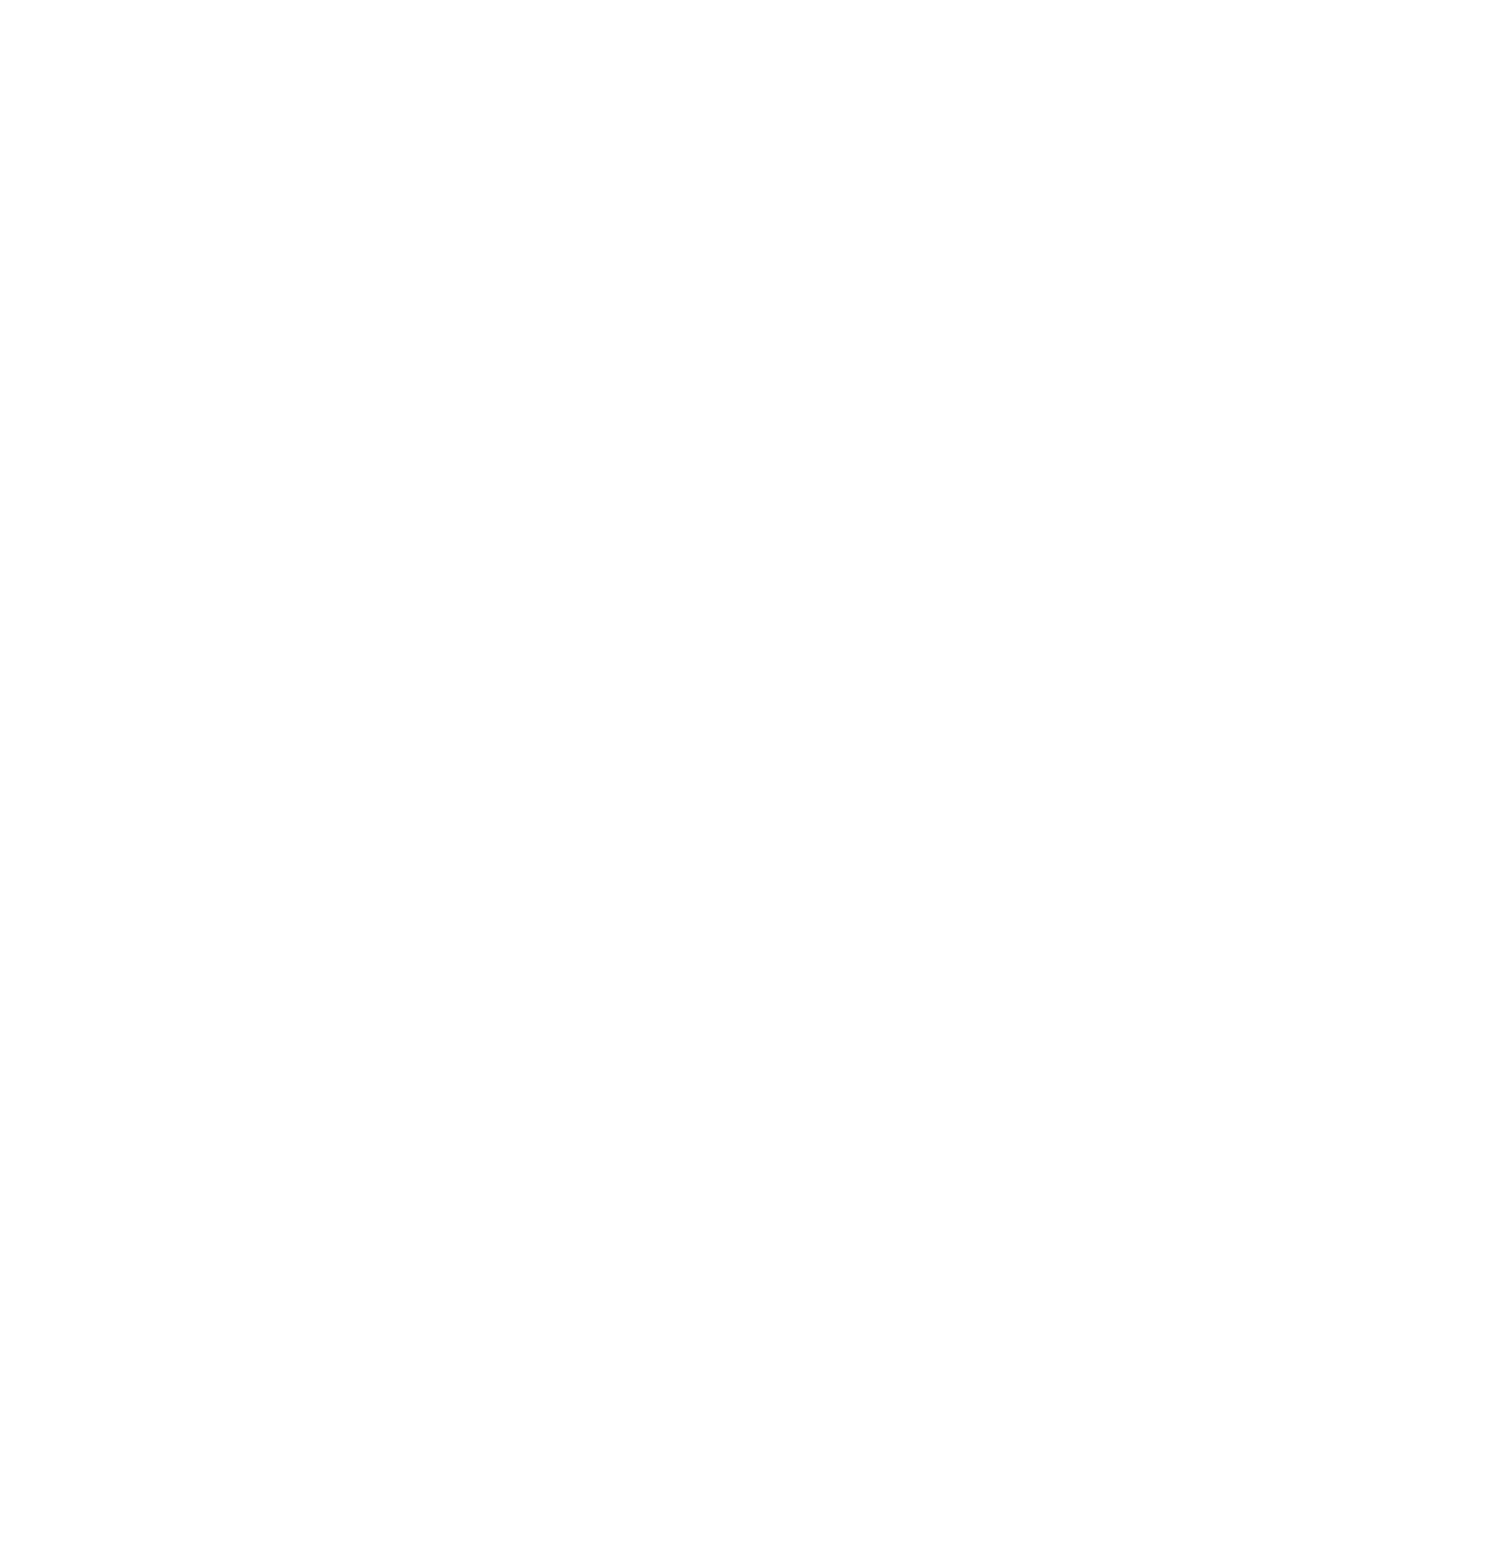 Jayems Photography